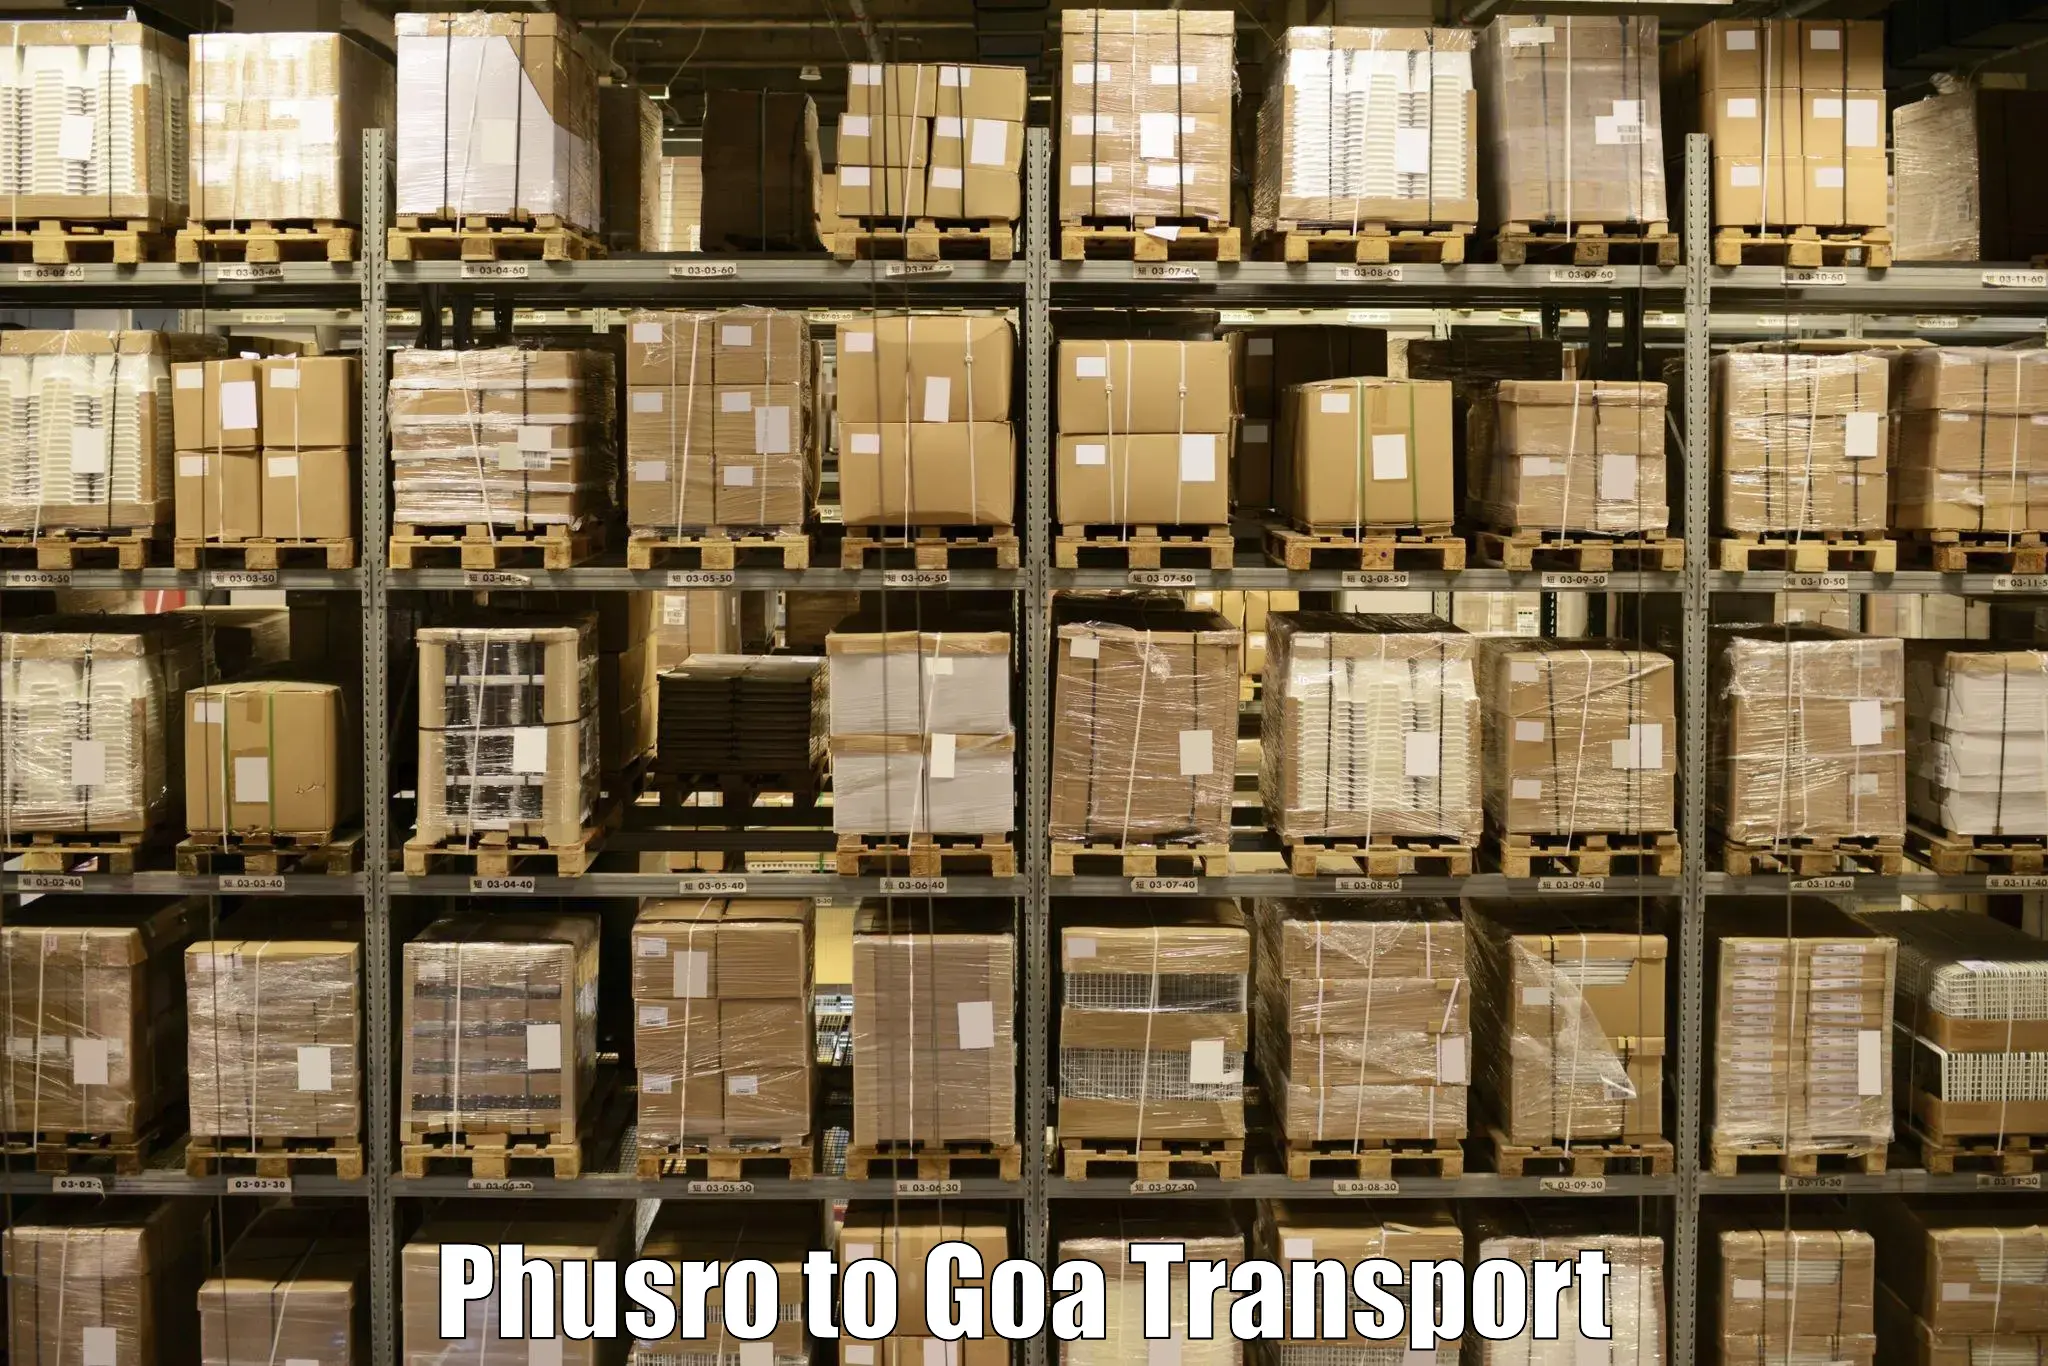 Bike transport service Phusro to Vasco da Gama